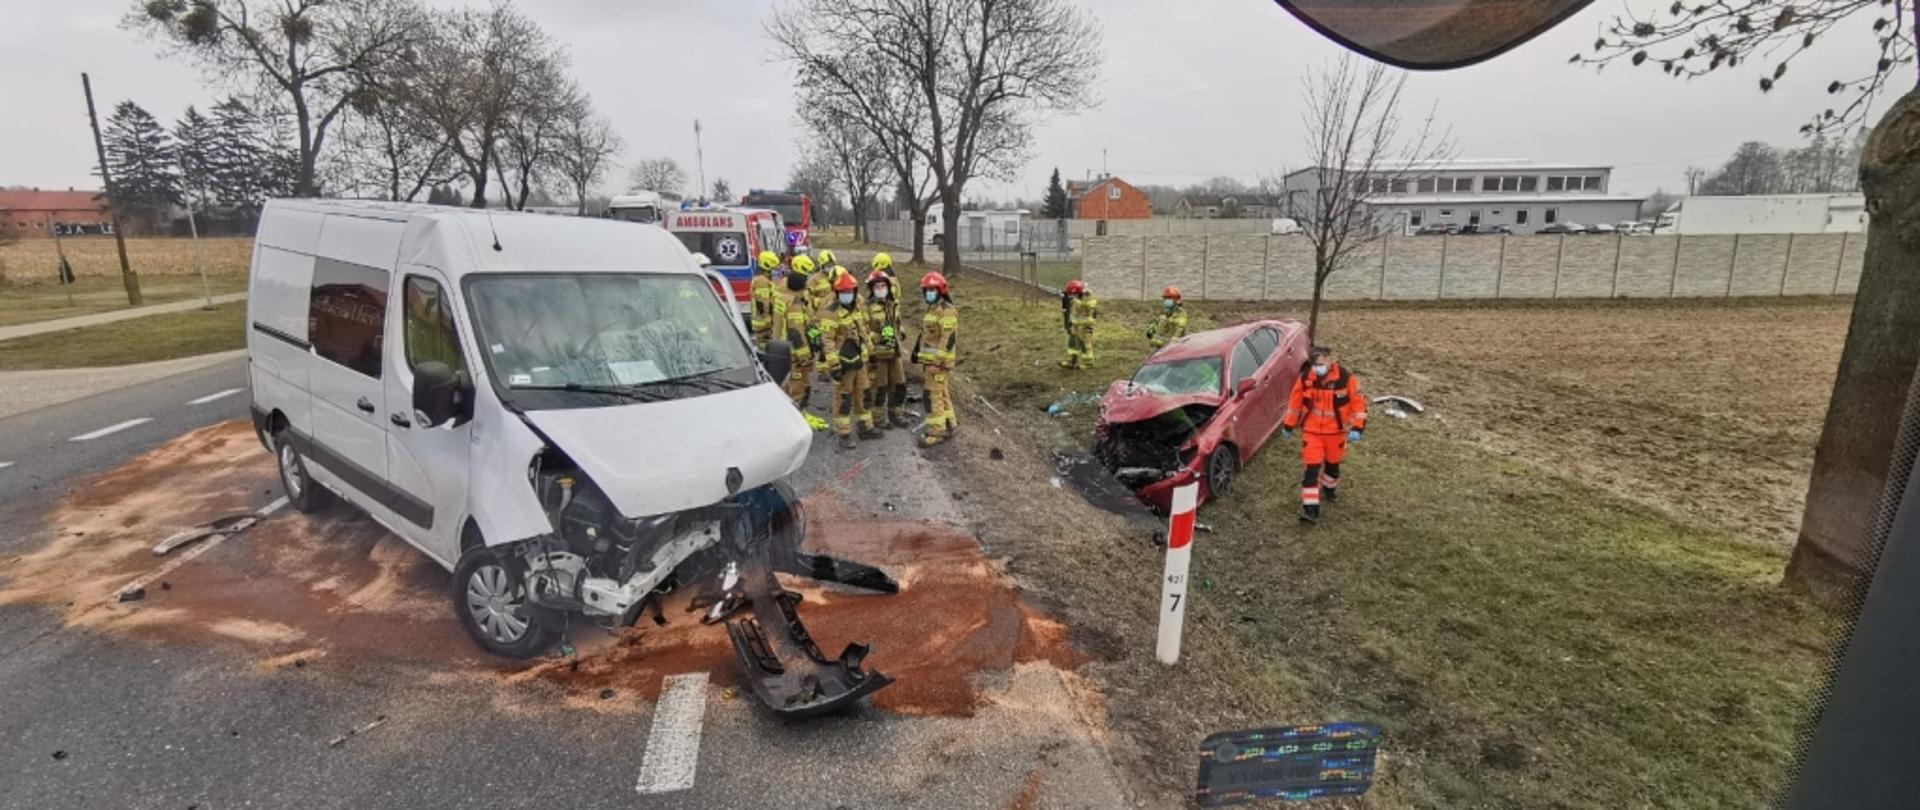 Rozbite samochody po zdarzeniu drogowym. Zdjęcie wykonane z kabiny samochodu pożarniczego.